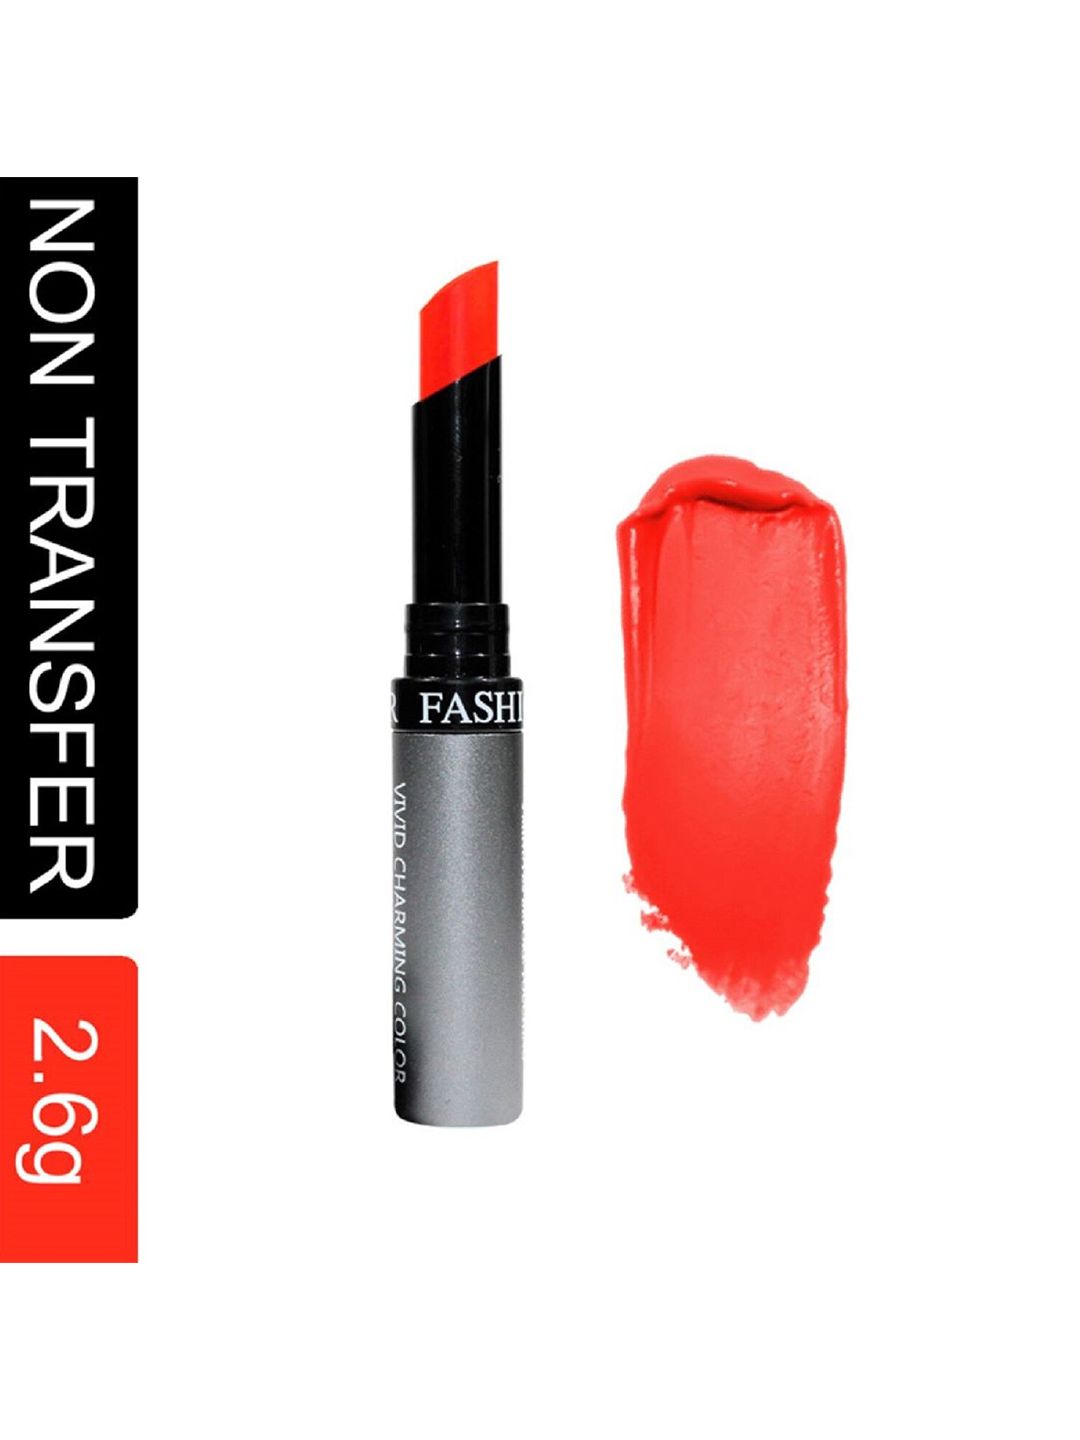 Fashion Colour Kiss Lip Vivid Charming Color No Transfer Lipstick - Orange Red 46 Price in India